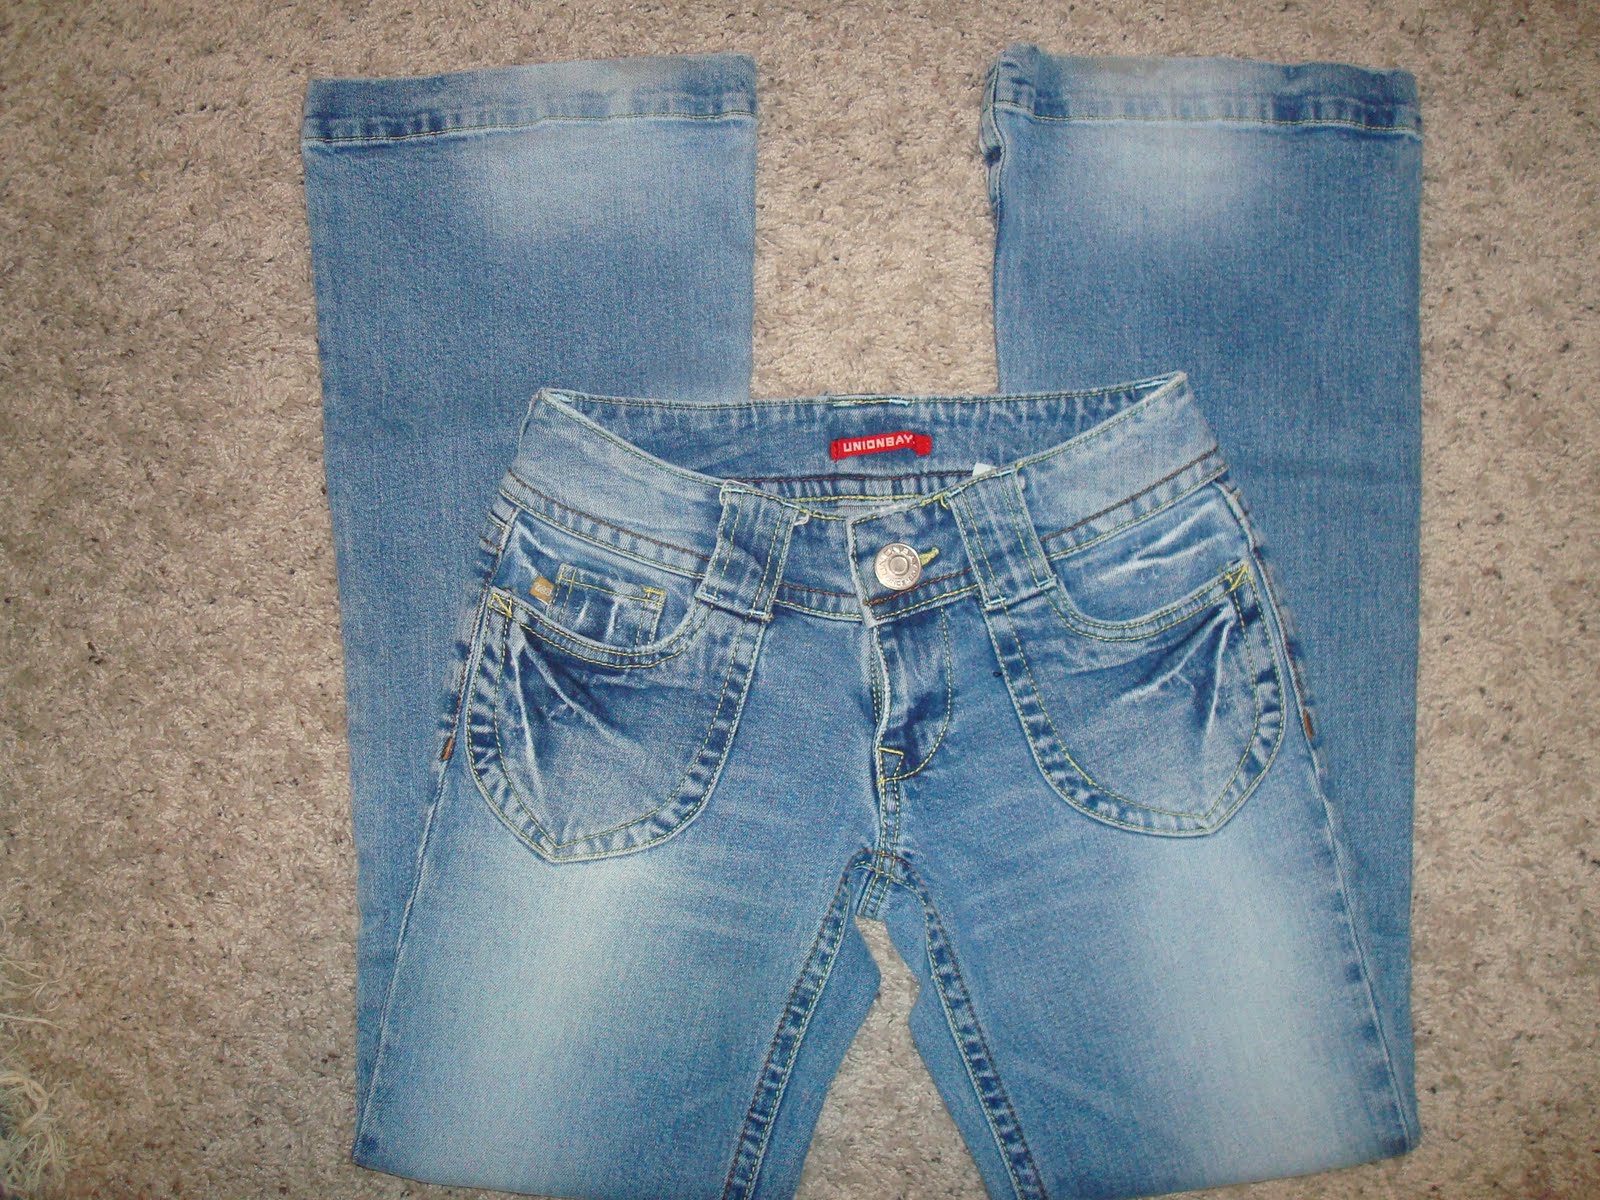 Size 0 Jeans Waist Measurement